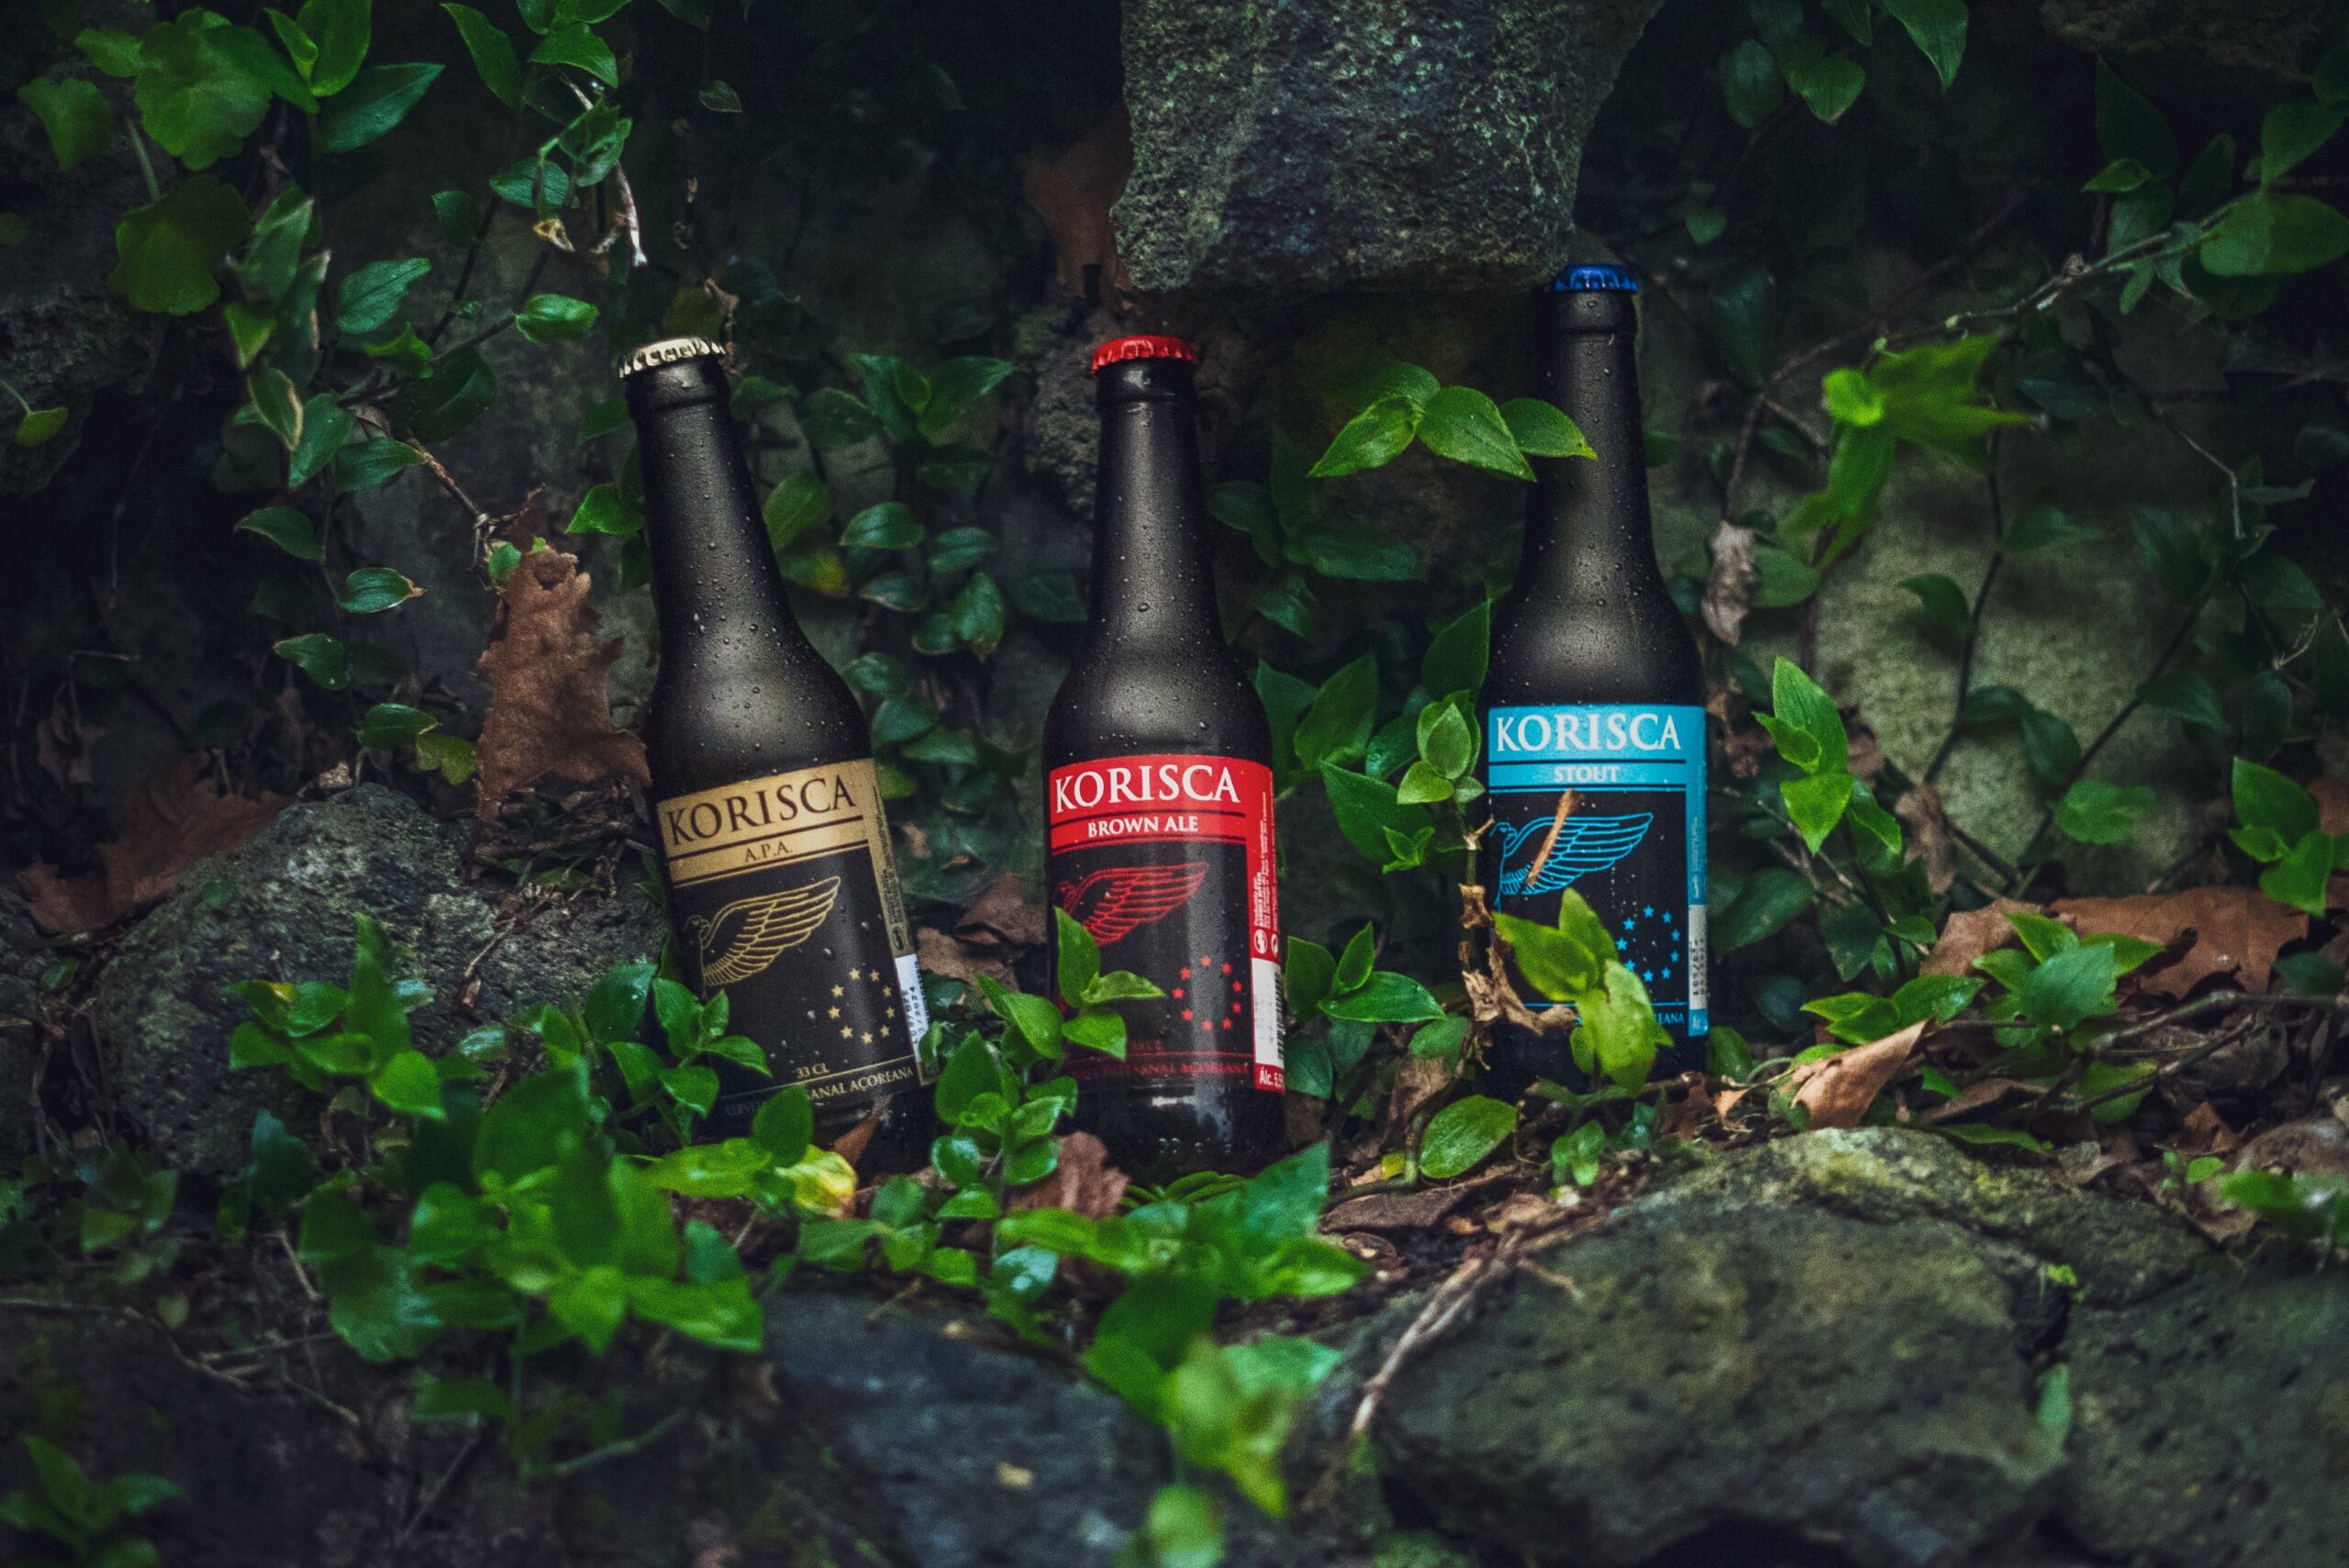 Cerveja artesanal açoriana Korisca Clássica II (APA), Korisca Clássica I (Brown Ale) e Korisca Clássica III (Stout), com vegetação verde e pedra escura, São Miguel, Açores.